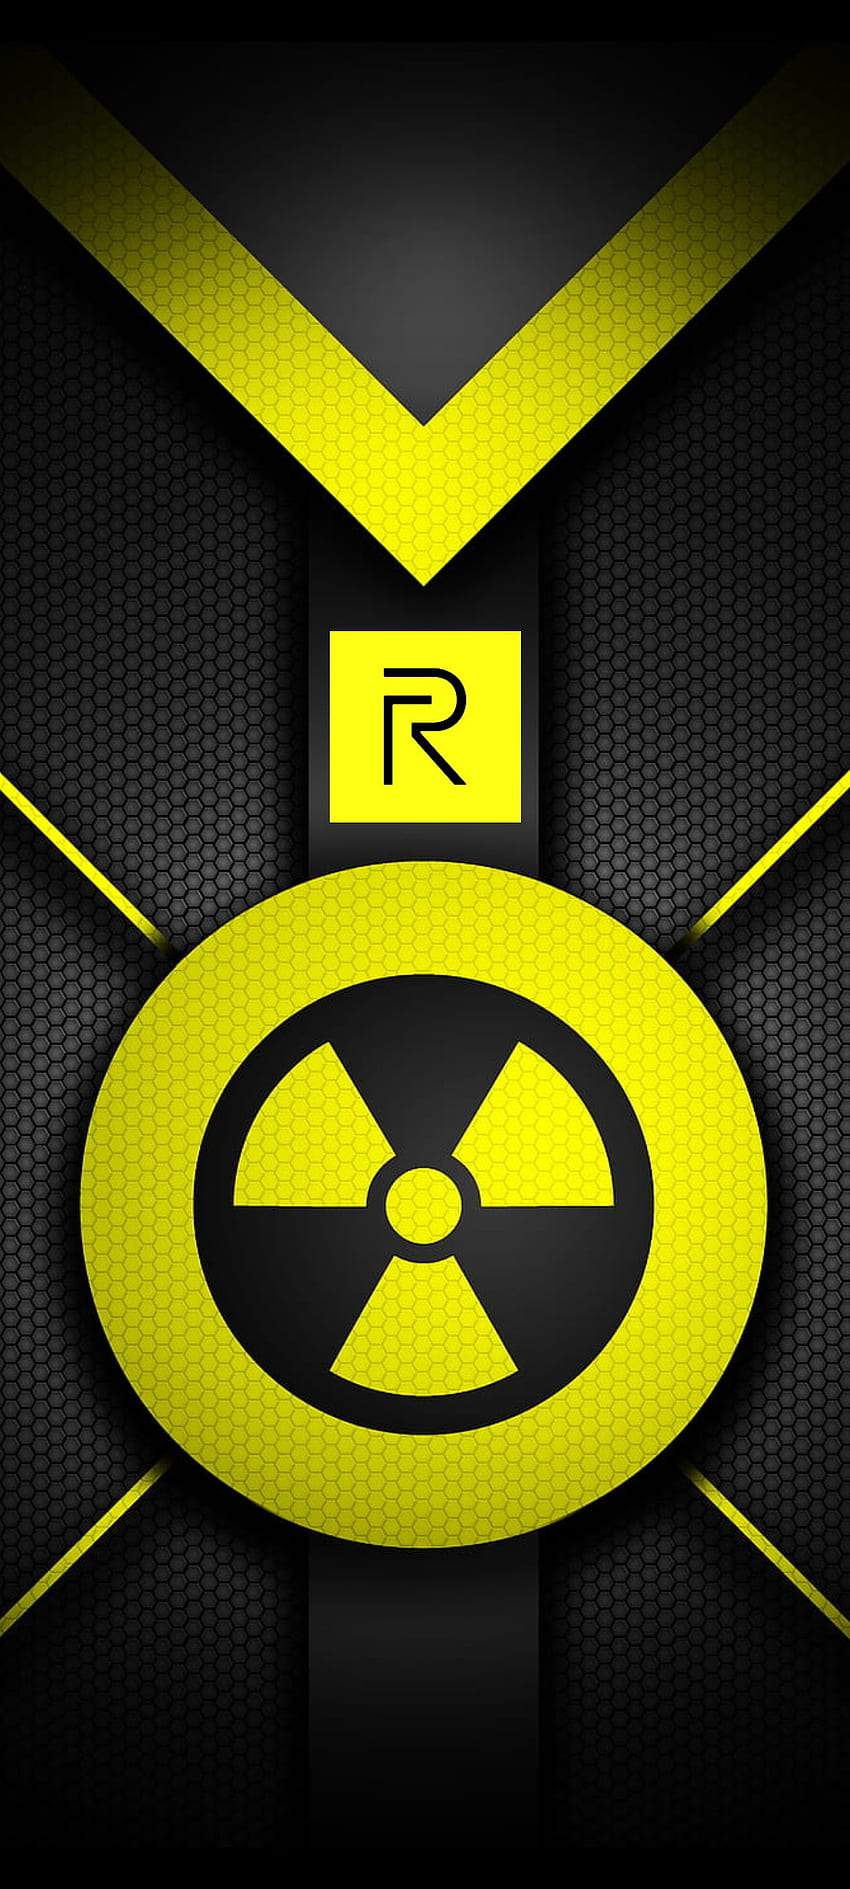 Realme nuclear, banana, running, panda, pantalla, pass, logo, american, fondos, anime, summer HD phone wallpaper